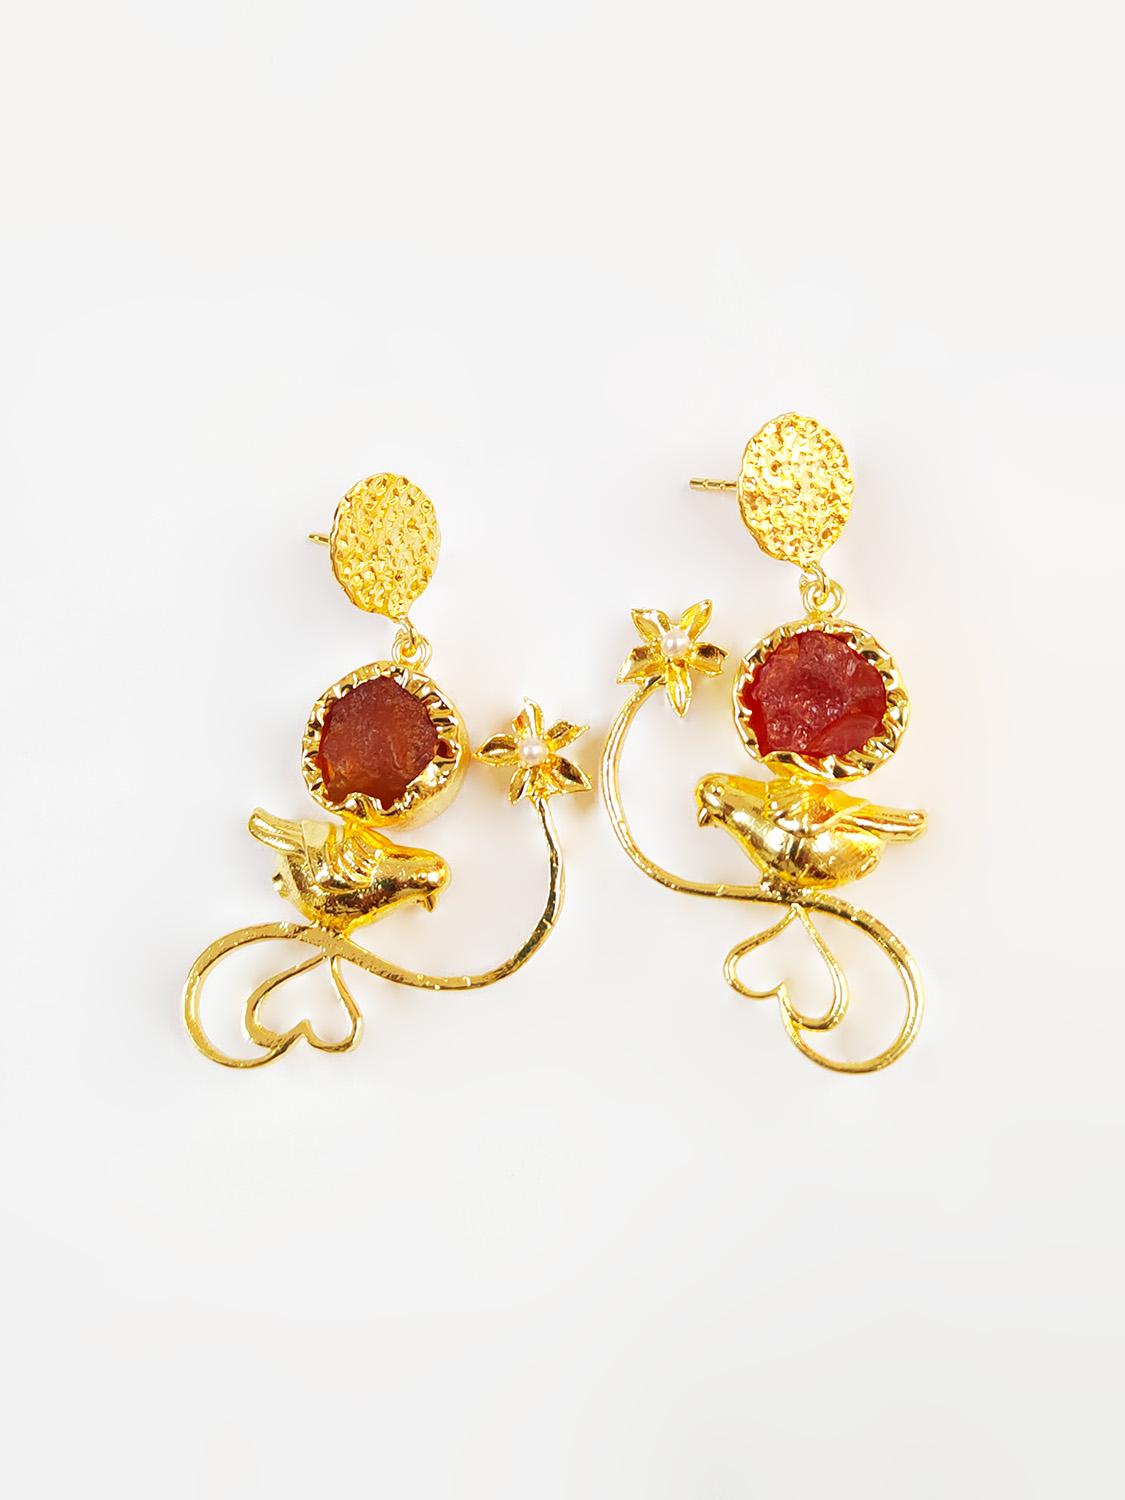 Scarlet Red Crystal Earrings Gold Flower